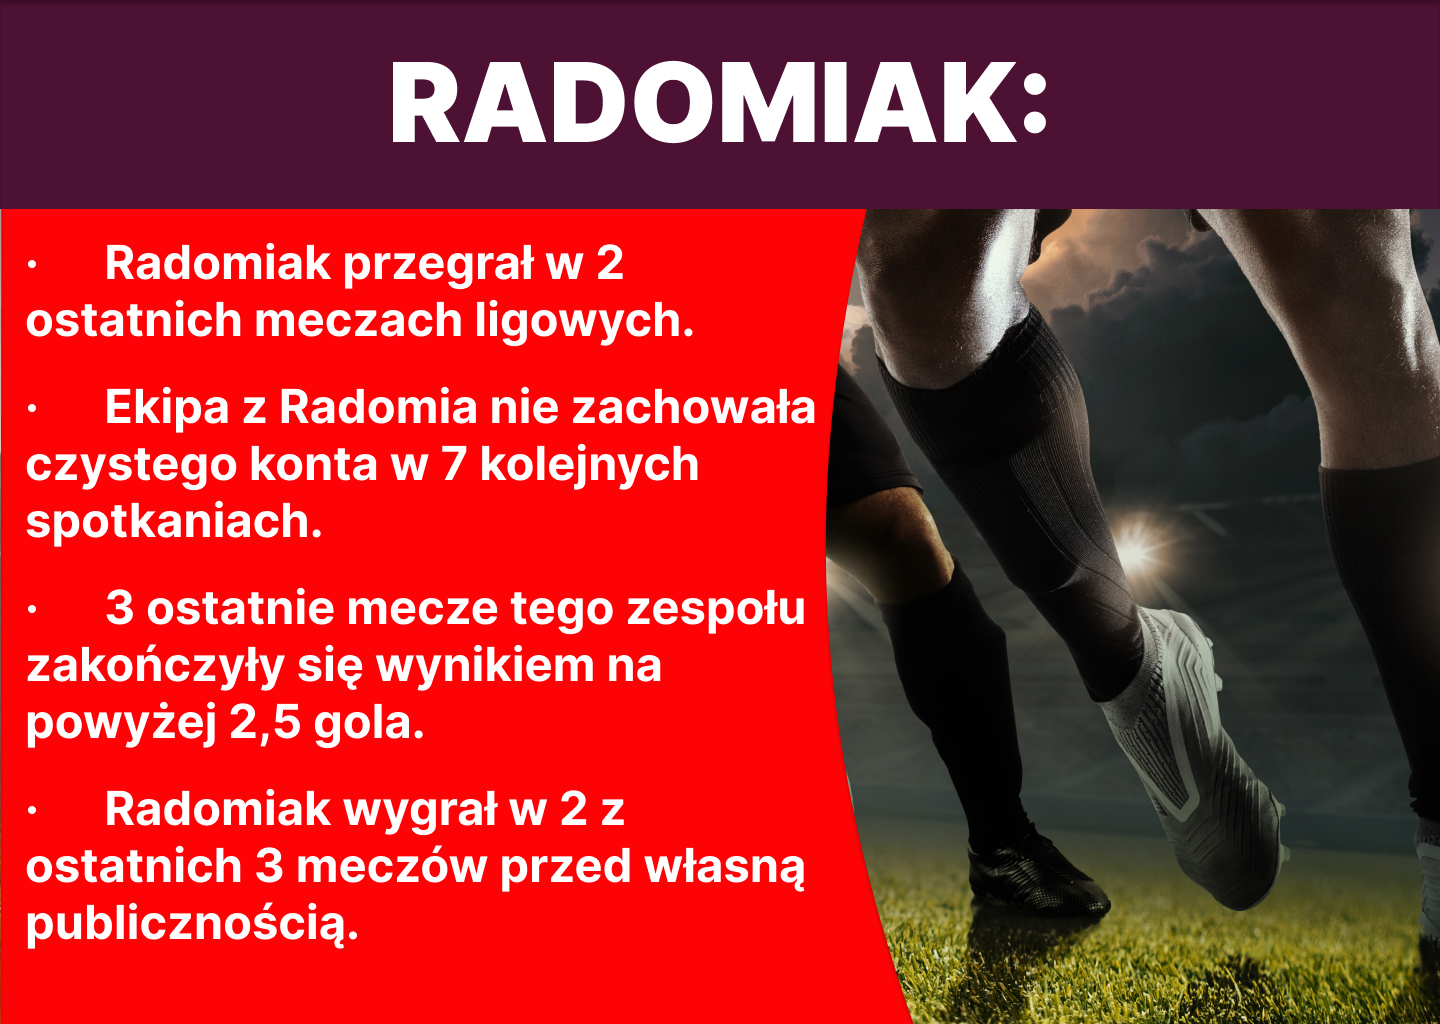 radomiak-statystyki-662a487d85d7f